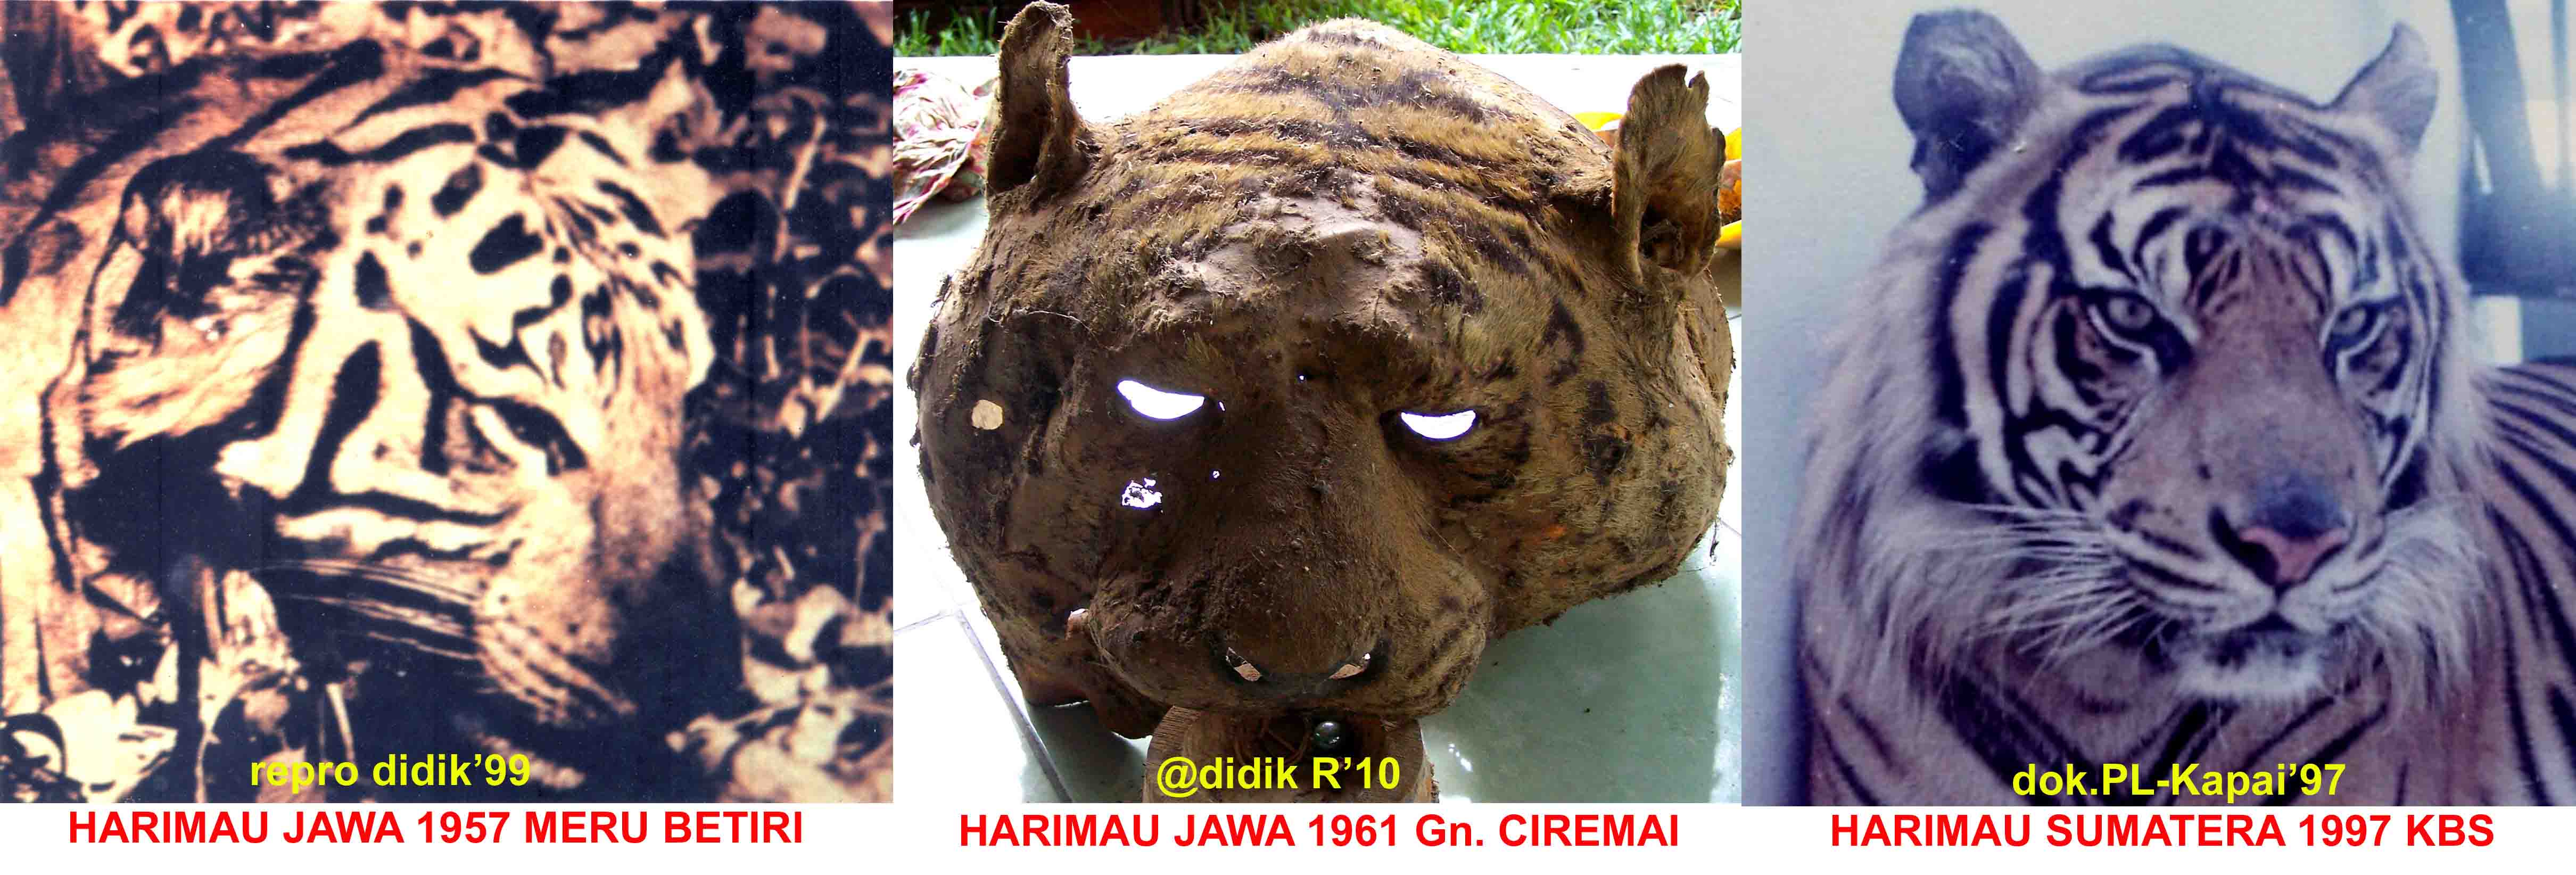 Harimau Jawa Javan Tiger Centers Blog